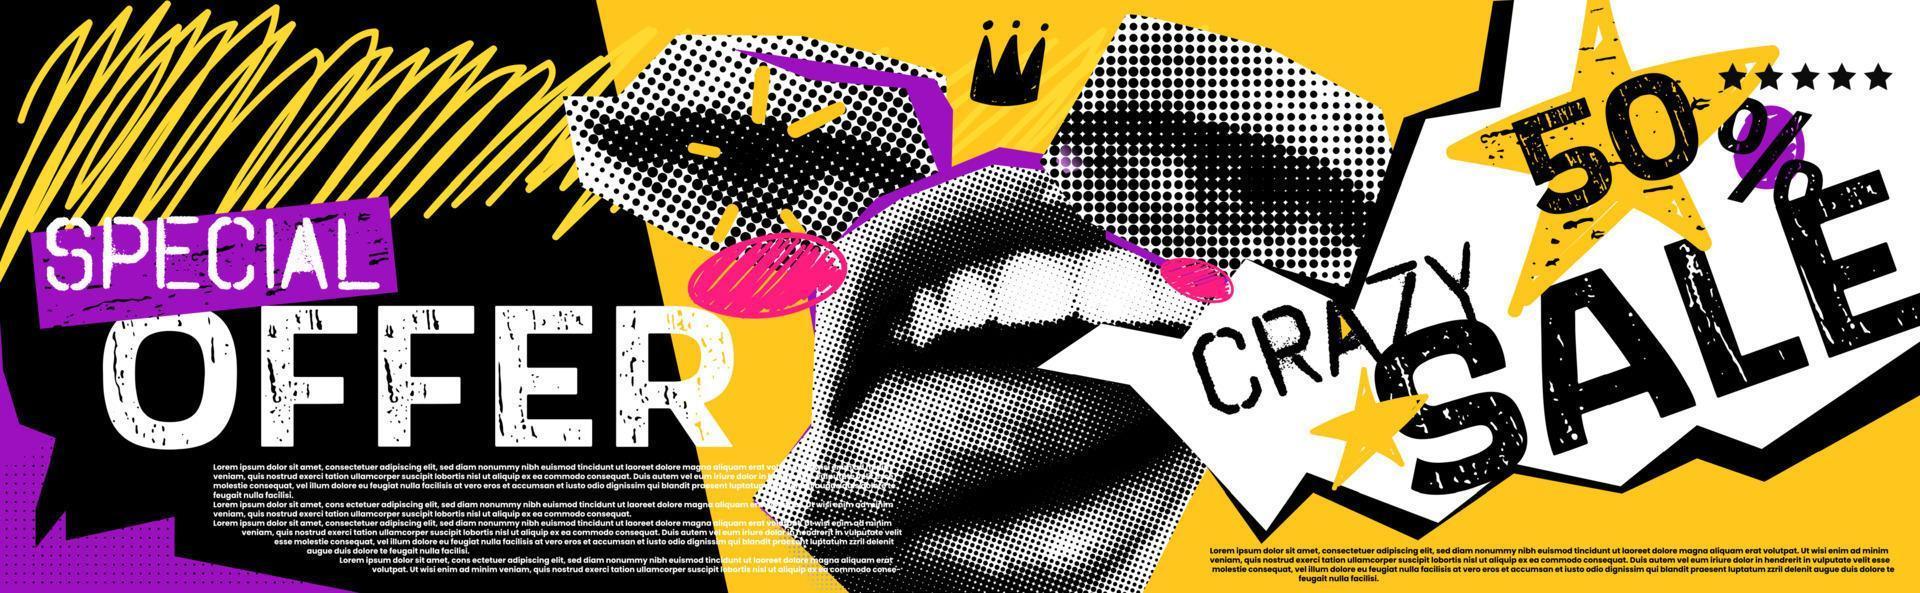 Rabatte Vektor Collage Grunge Banner. Lippen und Augen gespalten, darüber eine Krone. verrückte 50 Prozent Rabatt. Doodle-Elemente auf einem Retro-Poster. stilvolles modernes Werbeplakatdesign.